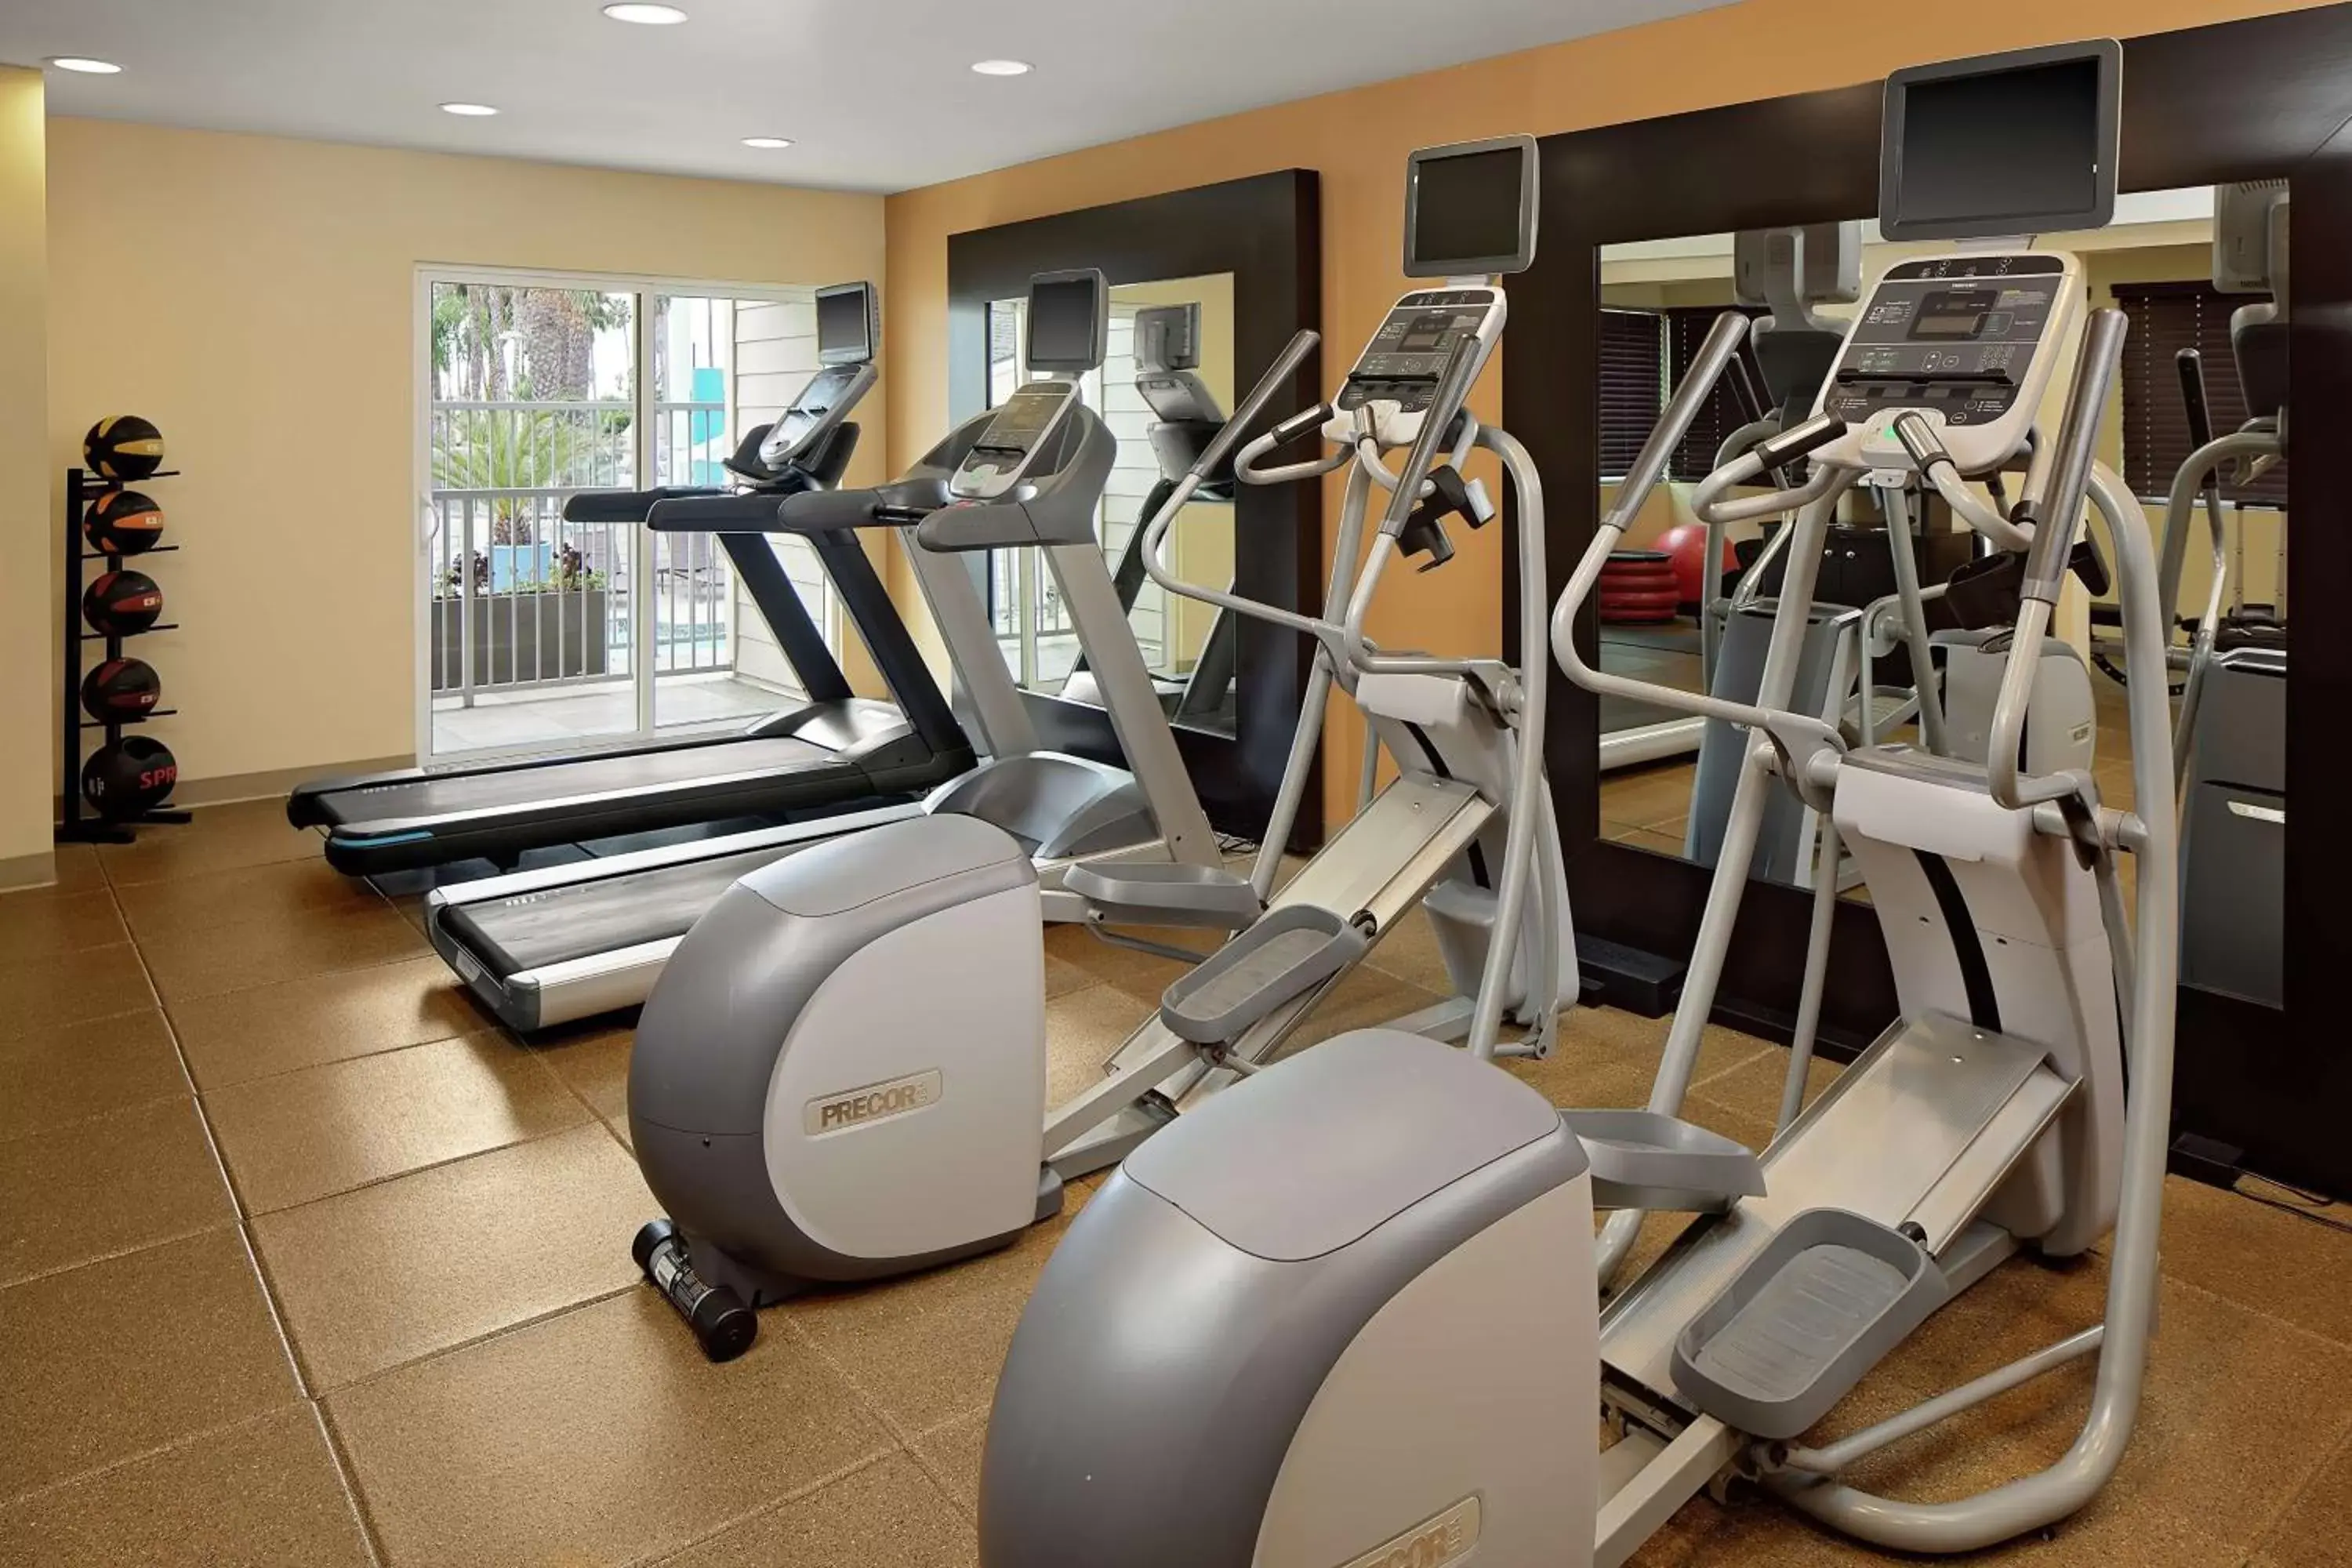 Fitness centre/facilities, Fitness Center/Facilities in Hilton Garden Inn Los Angeles Marina Del Rey